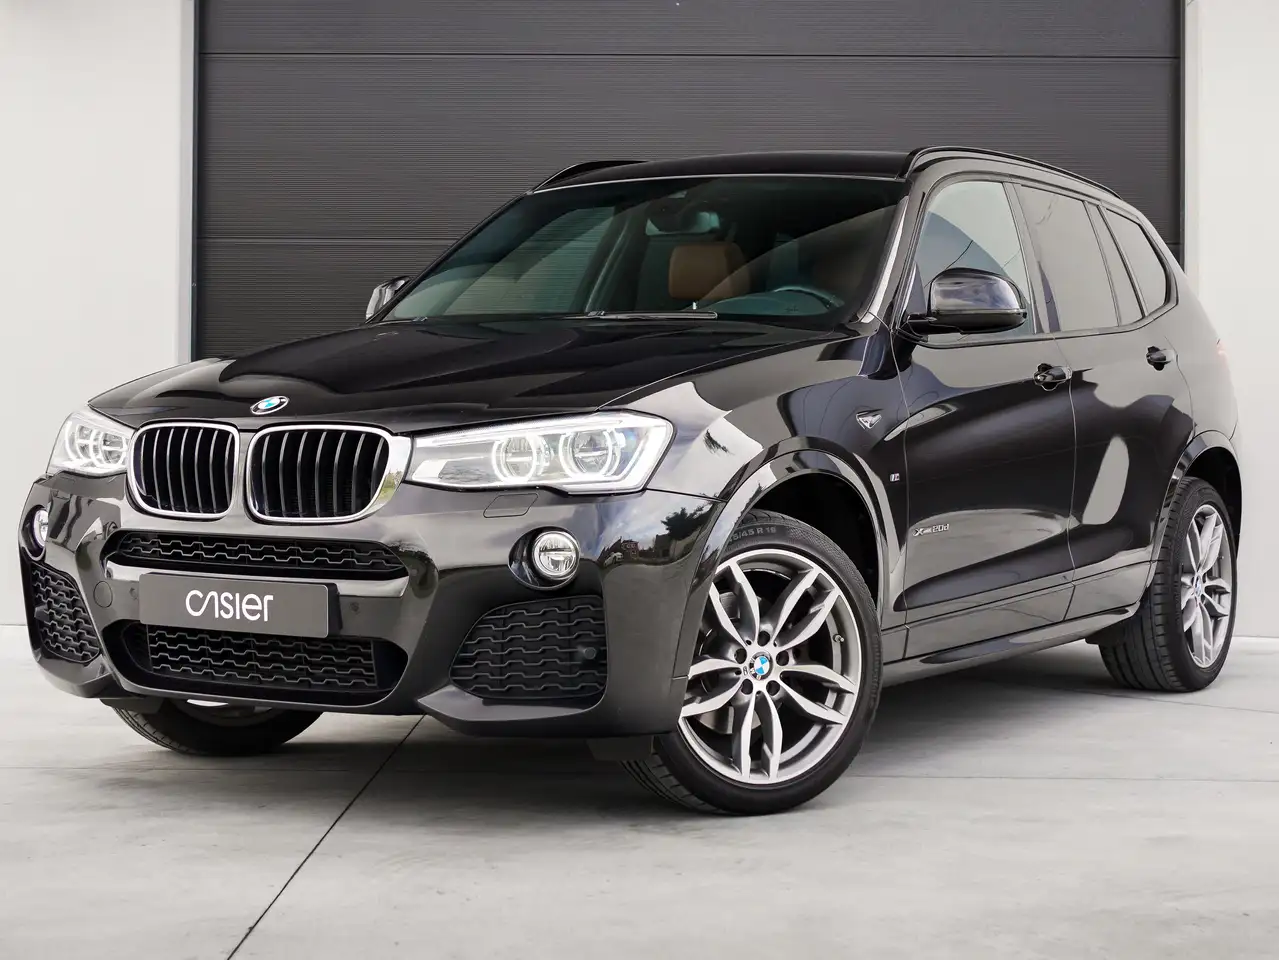 BMW X3 SUV/4x4/Pick-up in Zwart tweedehands in Zwevegem voor € 21.900,-